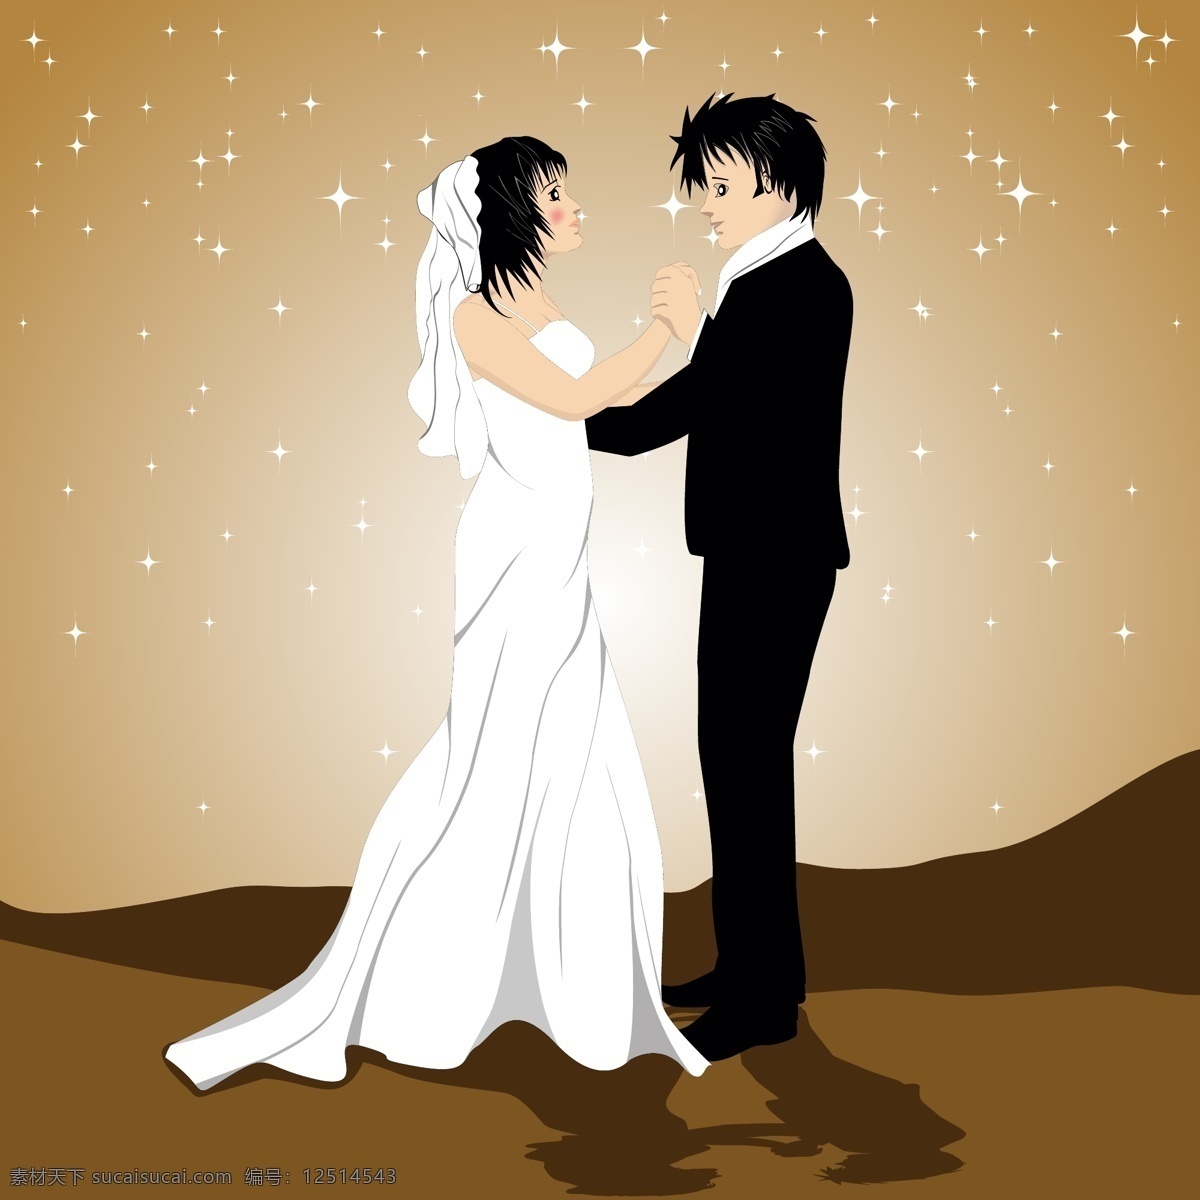 梦幻 结婚 礼服 星光 背景 海报 矢量 爱情